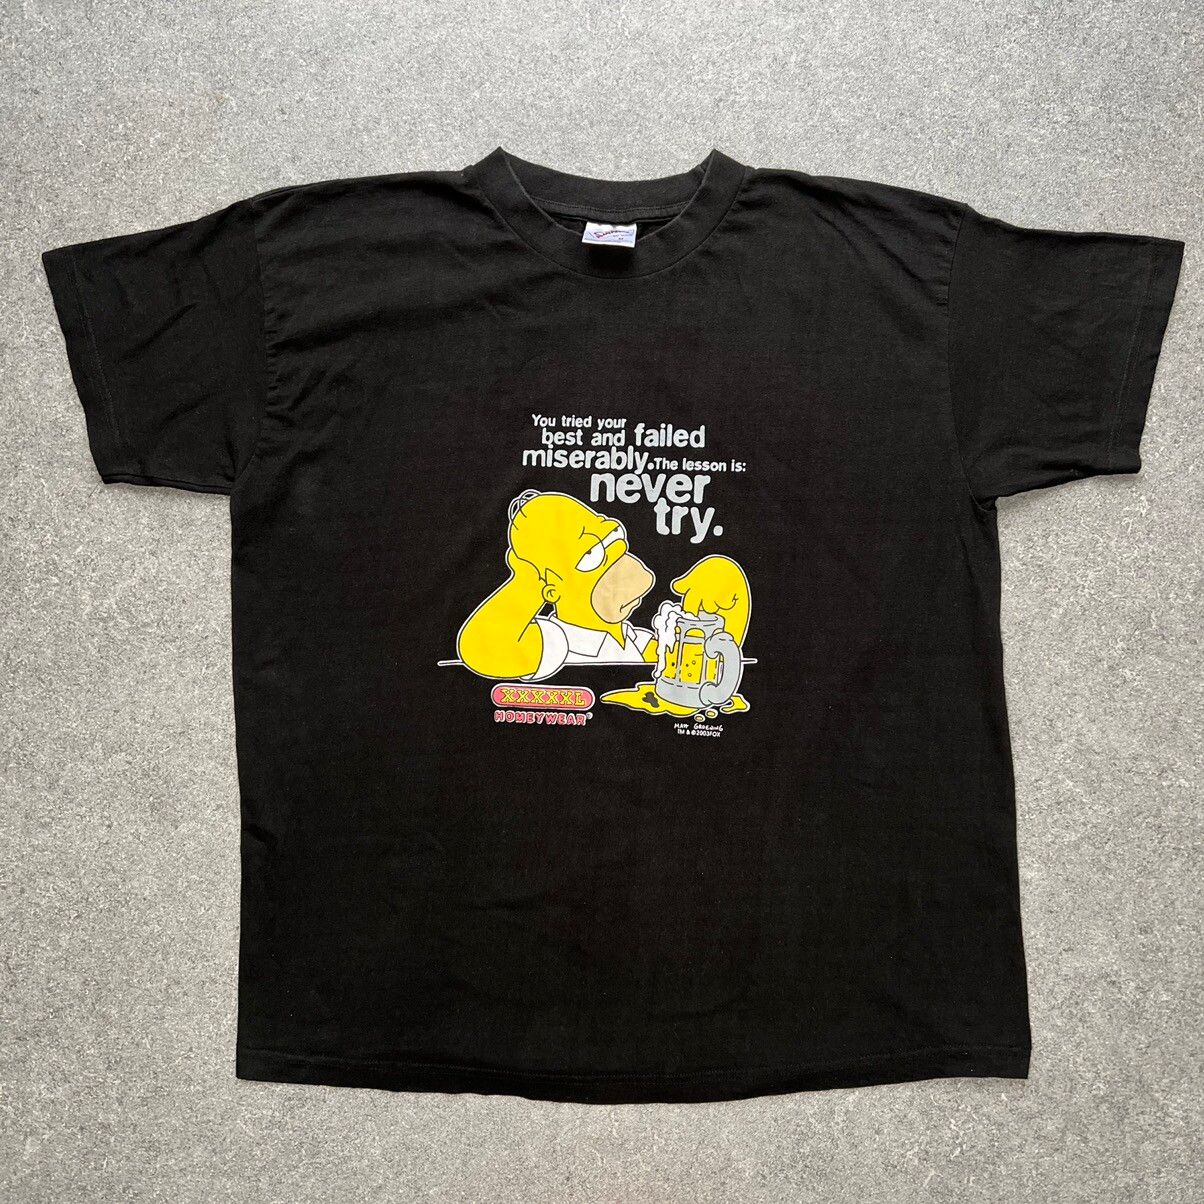 Vintage Vintage Simpsons Graphic T-Shirt 2004 Y2K’s - Men’s Medium Size US M / EU 48-50 / 2 - 1 Preview